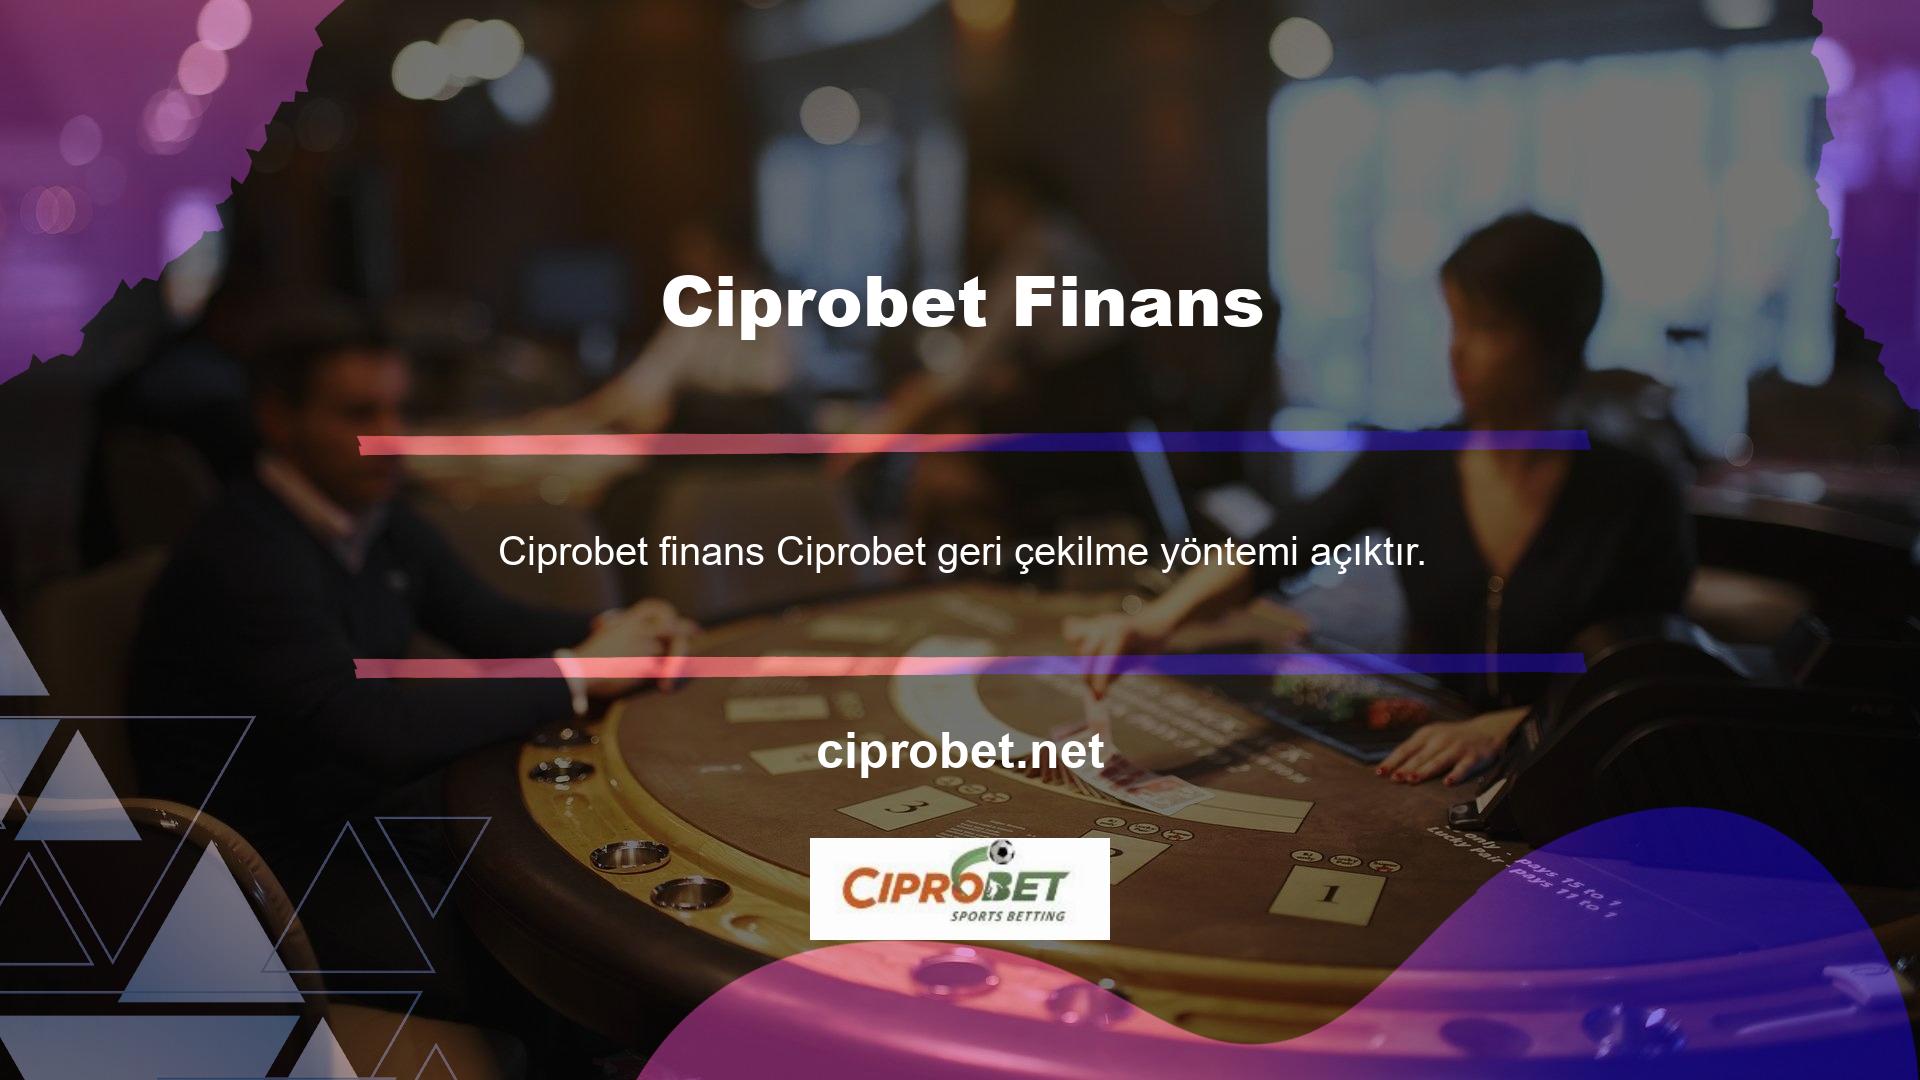 Ayrıca Ciprobet, Casino oynayanlar için çeşitli bahis seçenekleri sunmaktadır